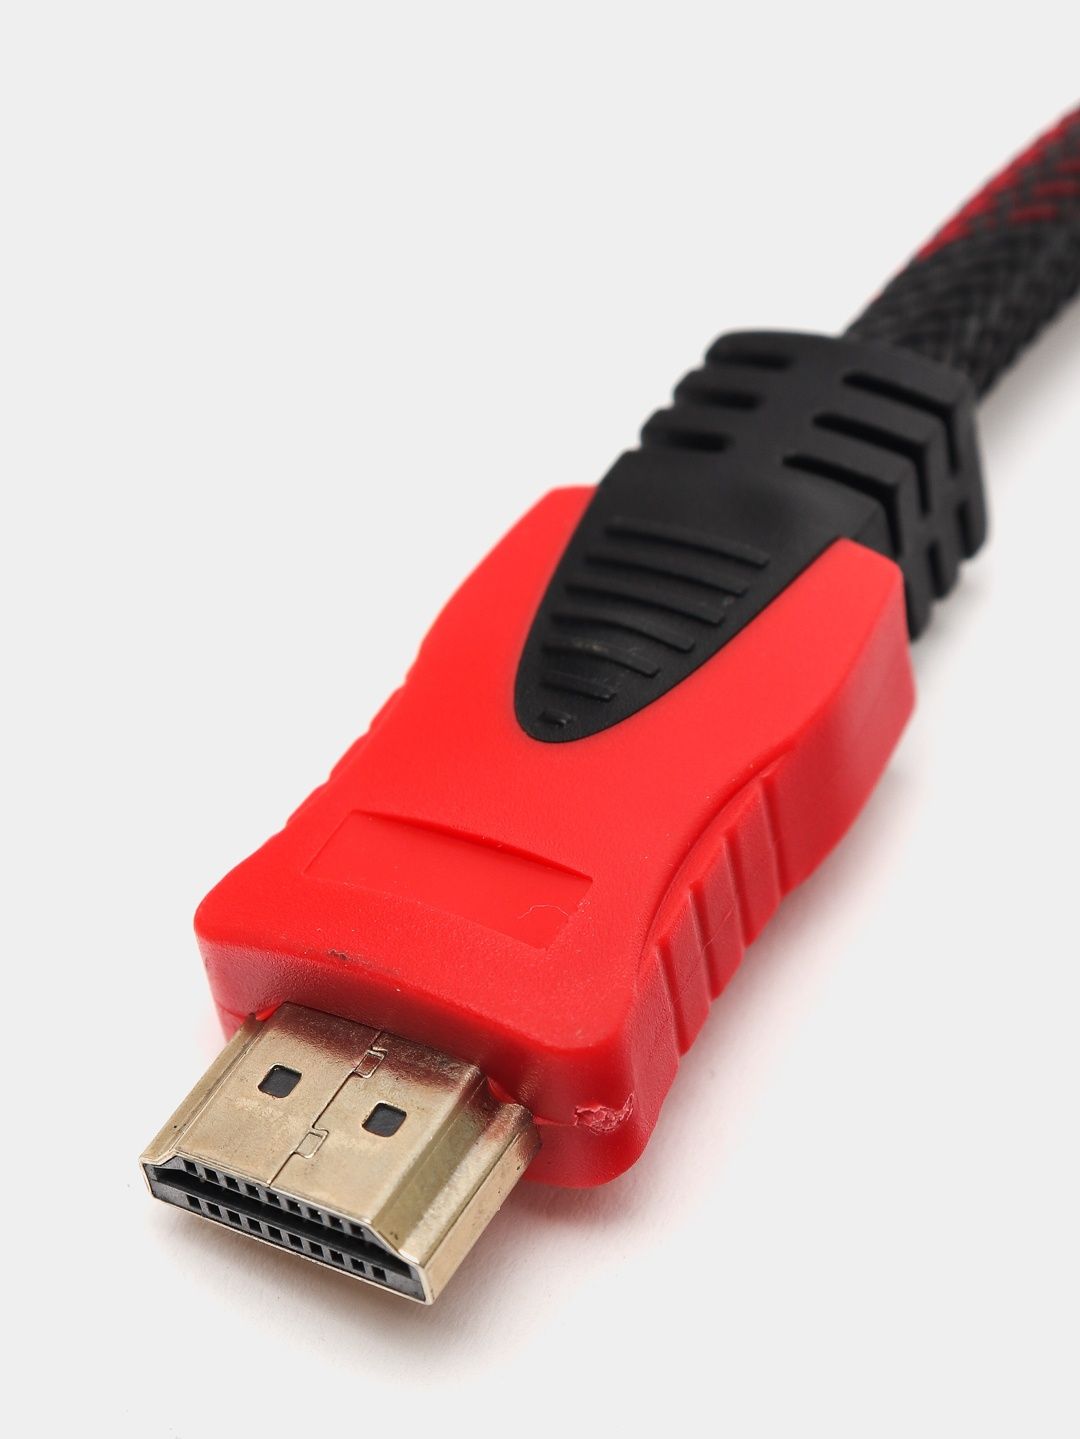 HDMI kabel hamma razmeridan bor